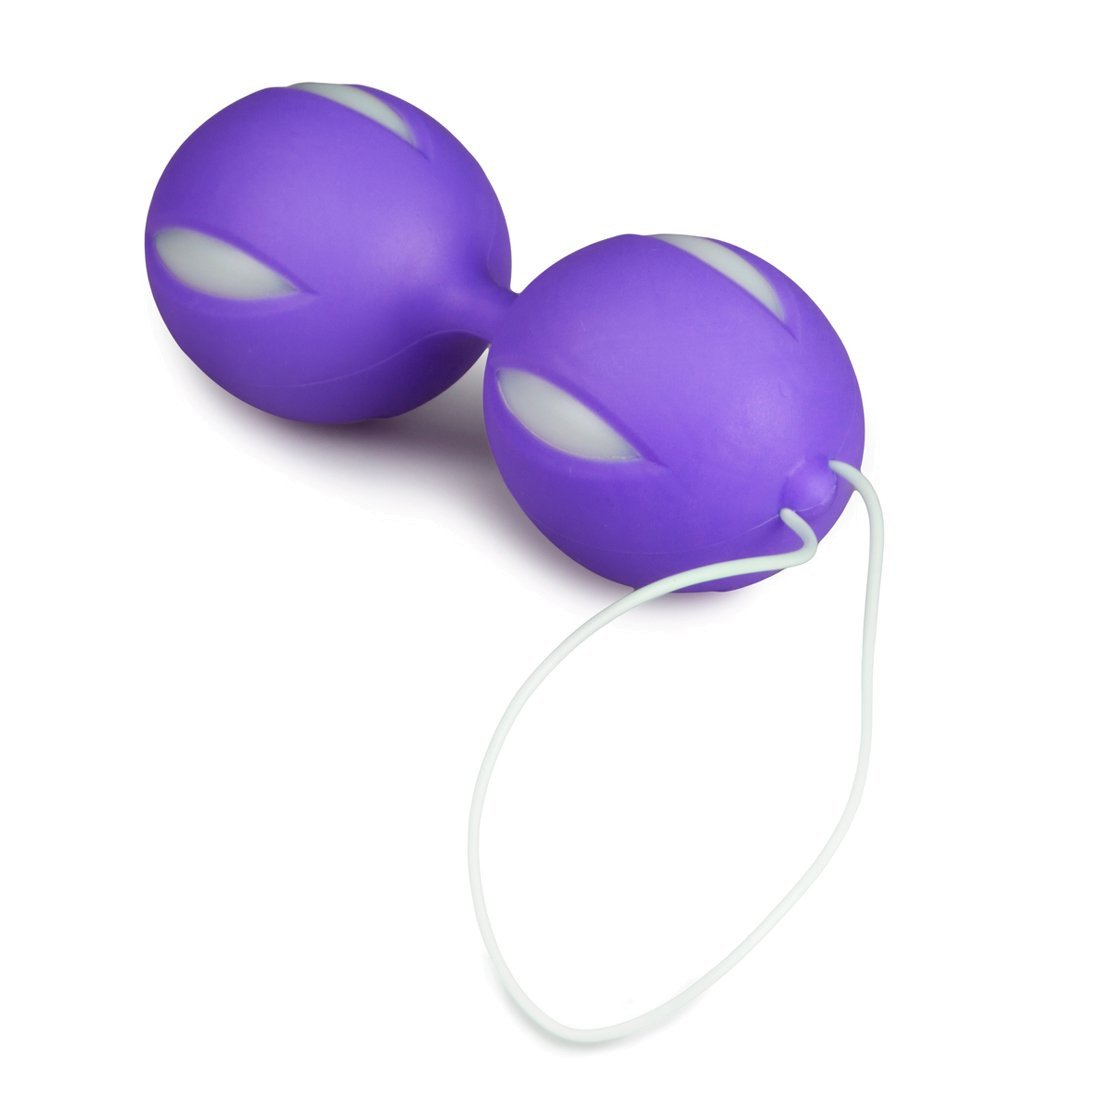 Vaginaliniai kamuoliukai „Wiggle Duo“ - EasyToys